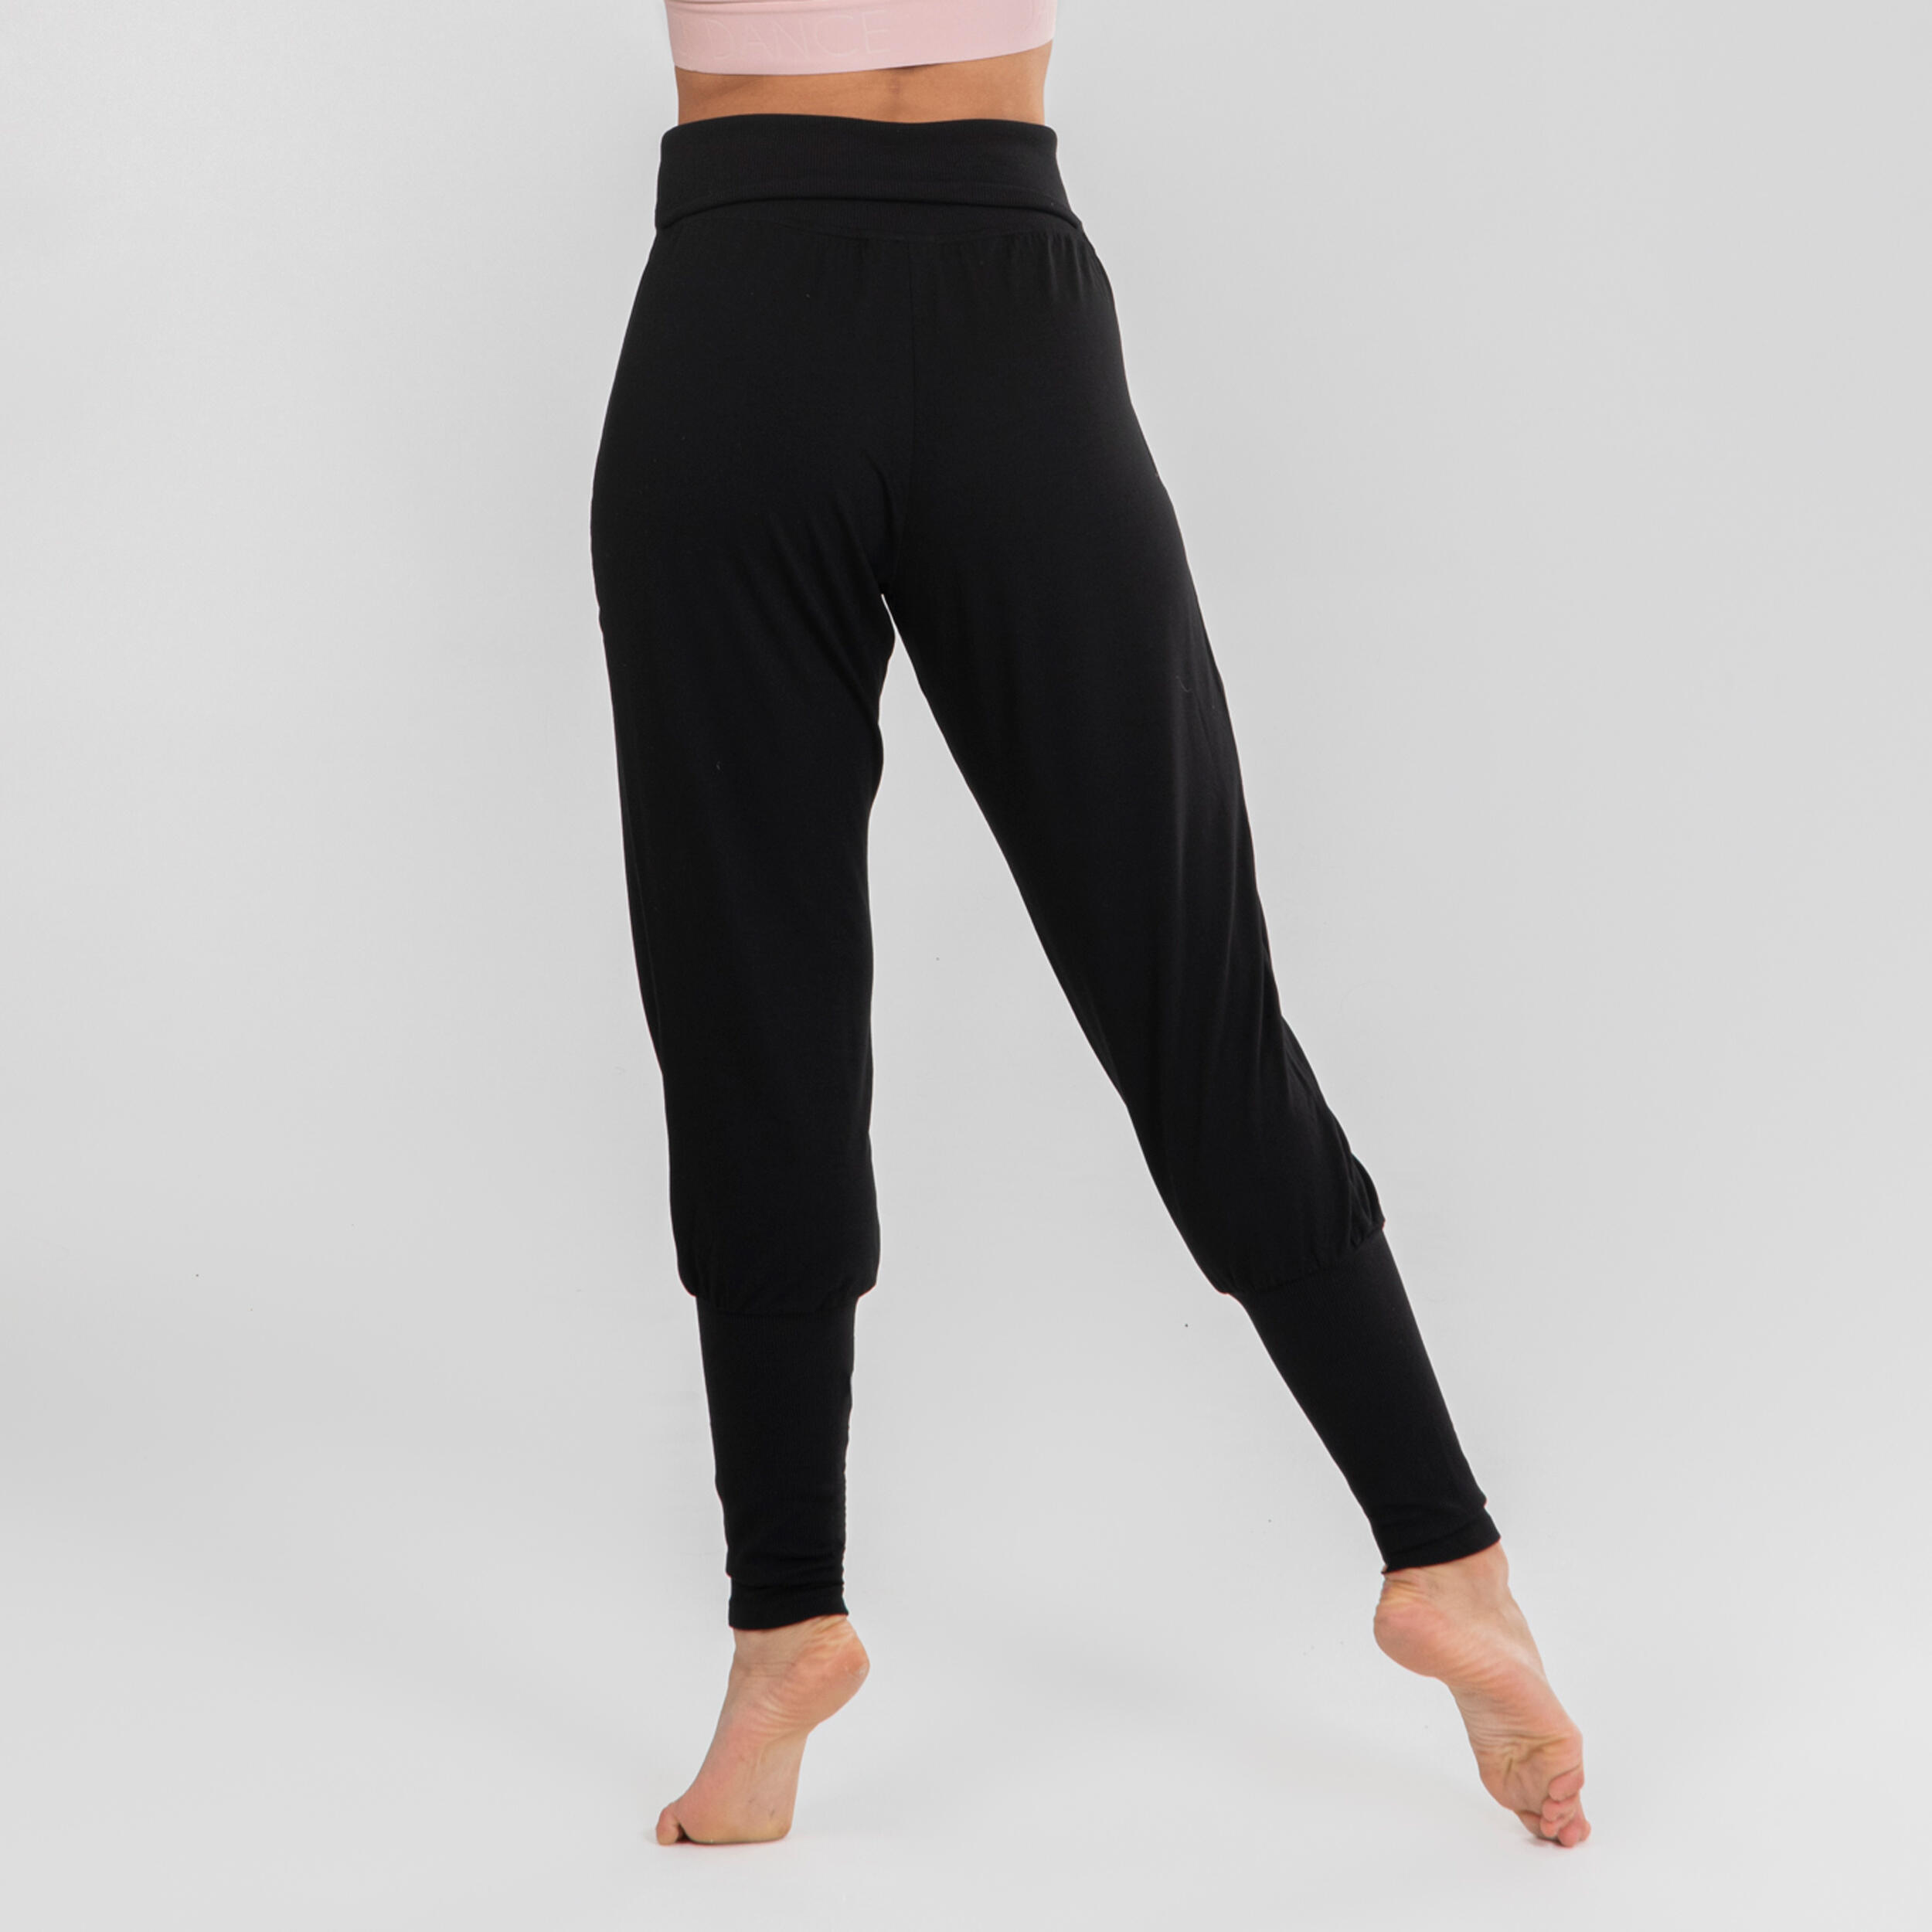 Women's Loose Modern Dance Pants - Black - Black - Starever - Decathlon